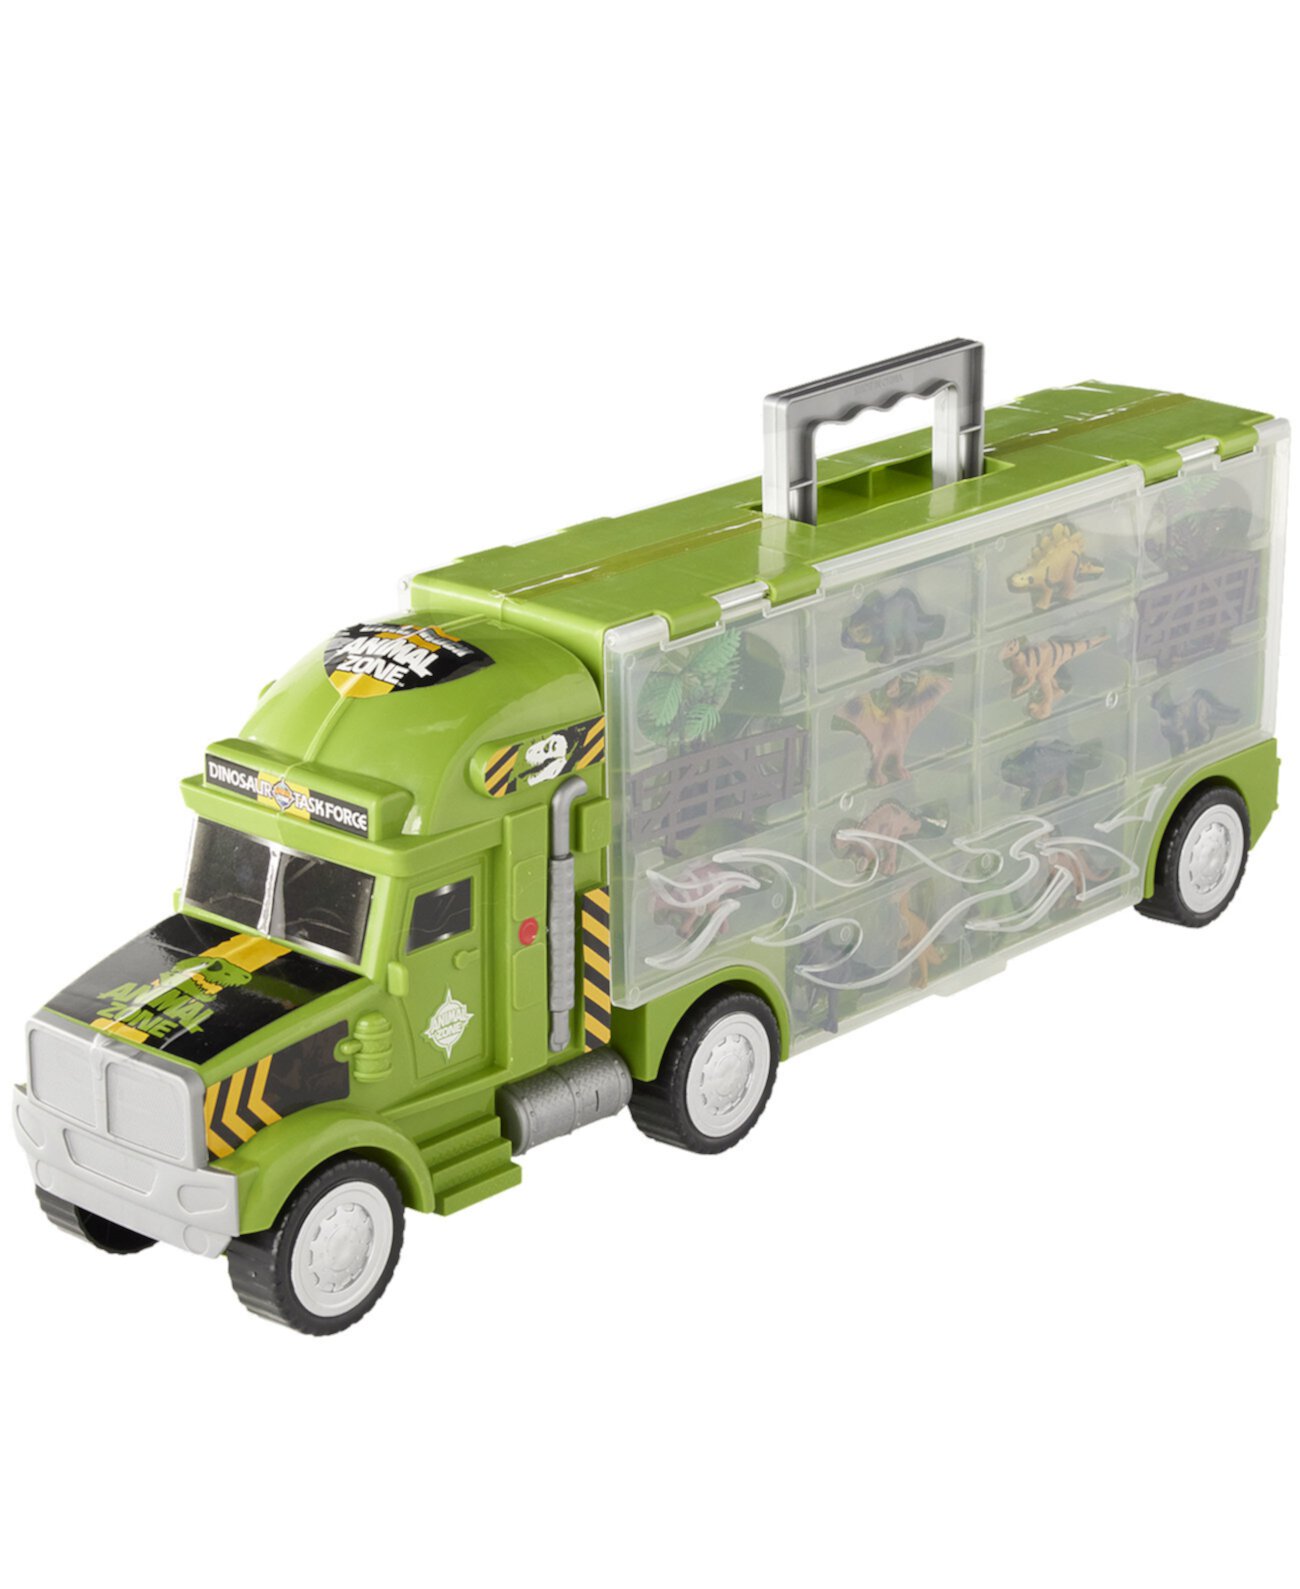 Дино-грузовик, созданный для вас компанией Toys R Us Animal Zone